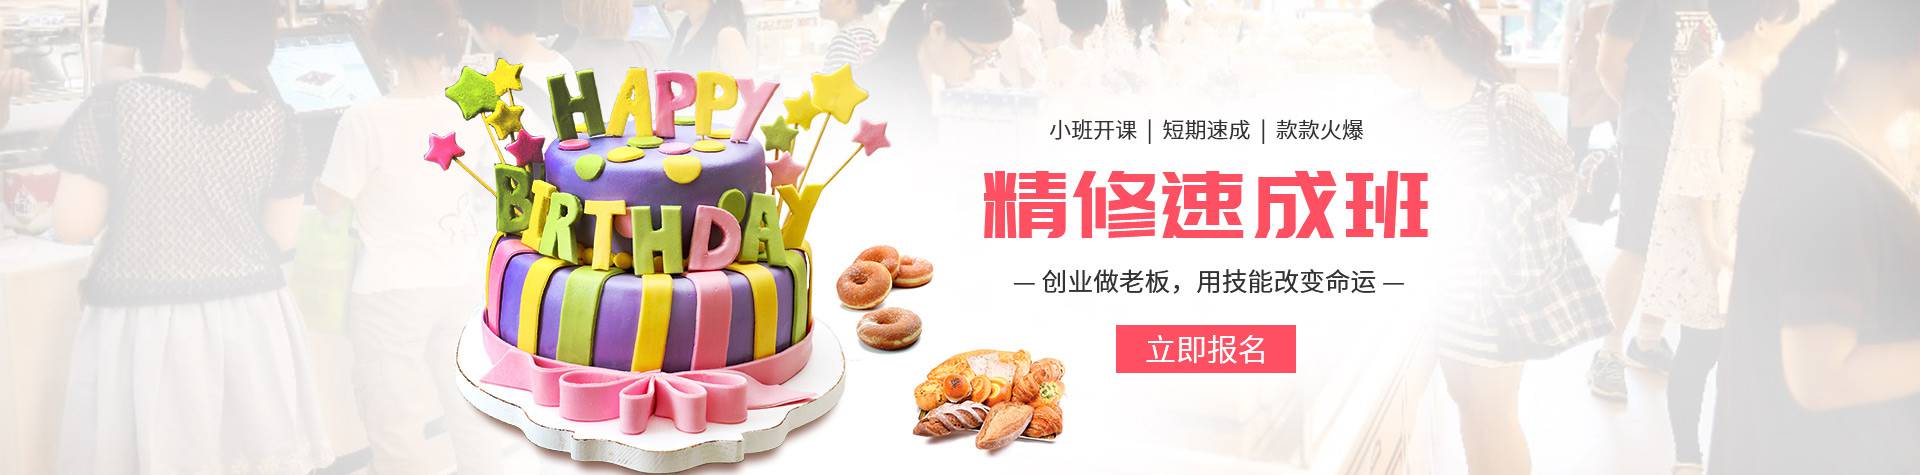 蛋糕课程定制,银河天幕位于东莞,欢迎咨询,提供免费报价.